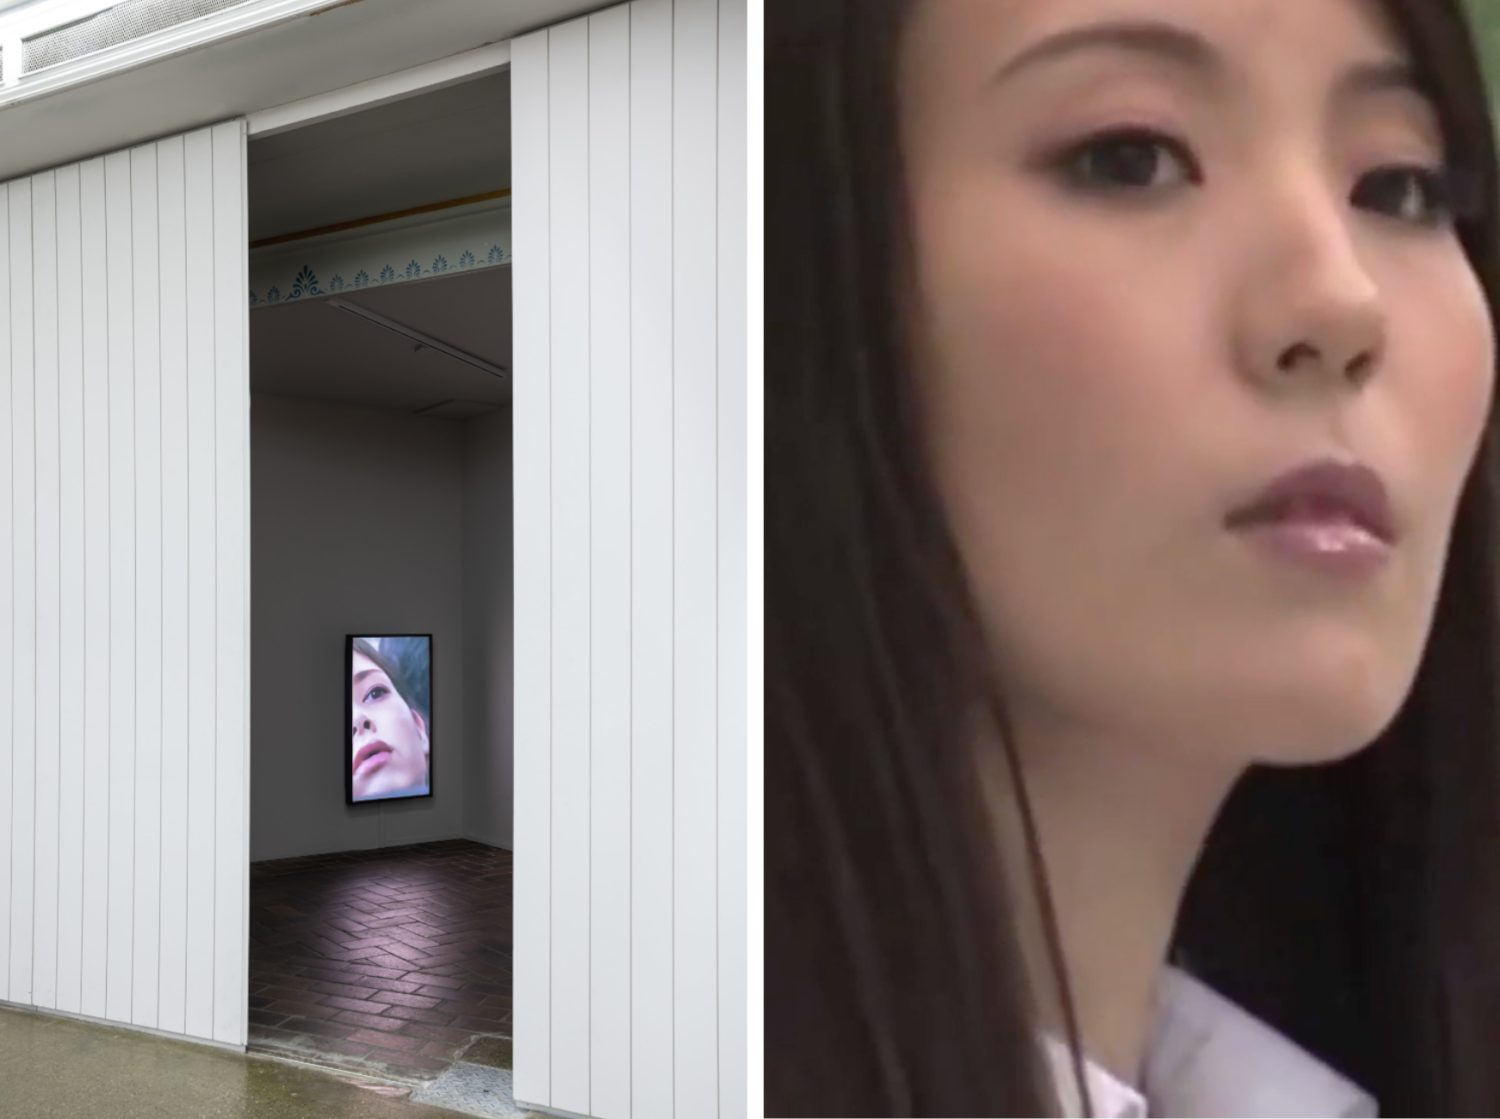 In einem halbdunklen Raum sieht man einen Bildschirm, der das Gesicht einer Frau zeigt. Rechts ist eine Nahaufnahme einer anderen Frau zu sehen, die ebenso teilnahmslos guckt.